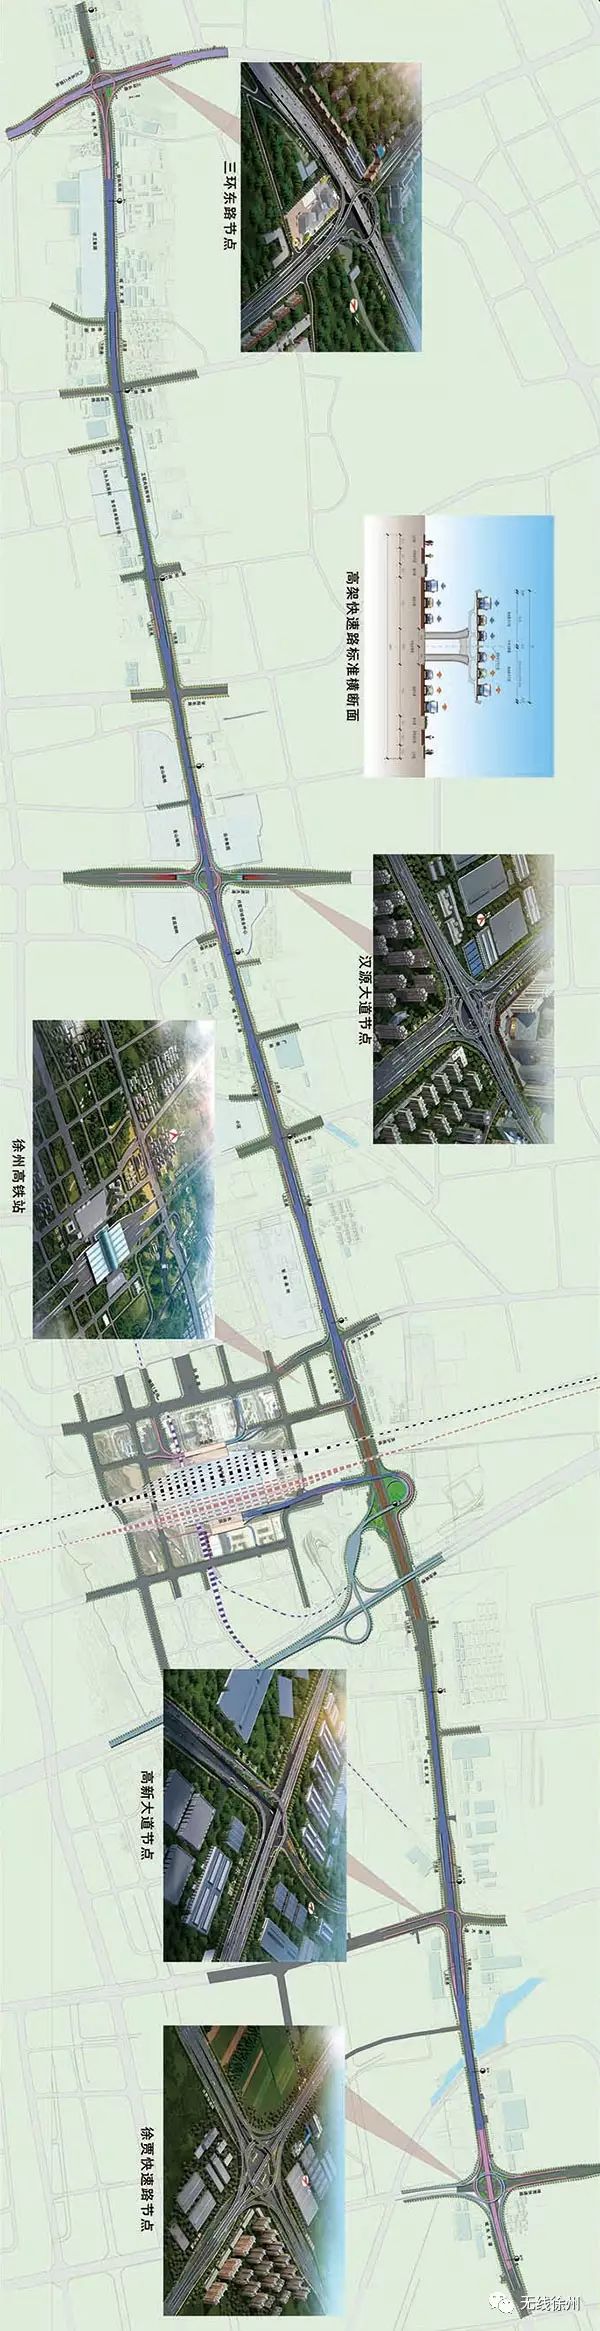 首页 新闻 徐州新闻  城东大道快速路全线共12.32km,其中高架段9.